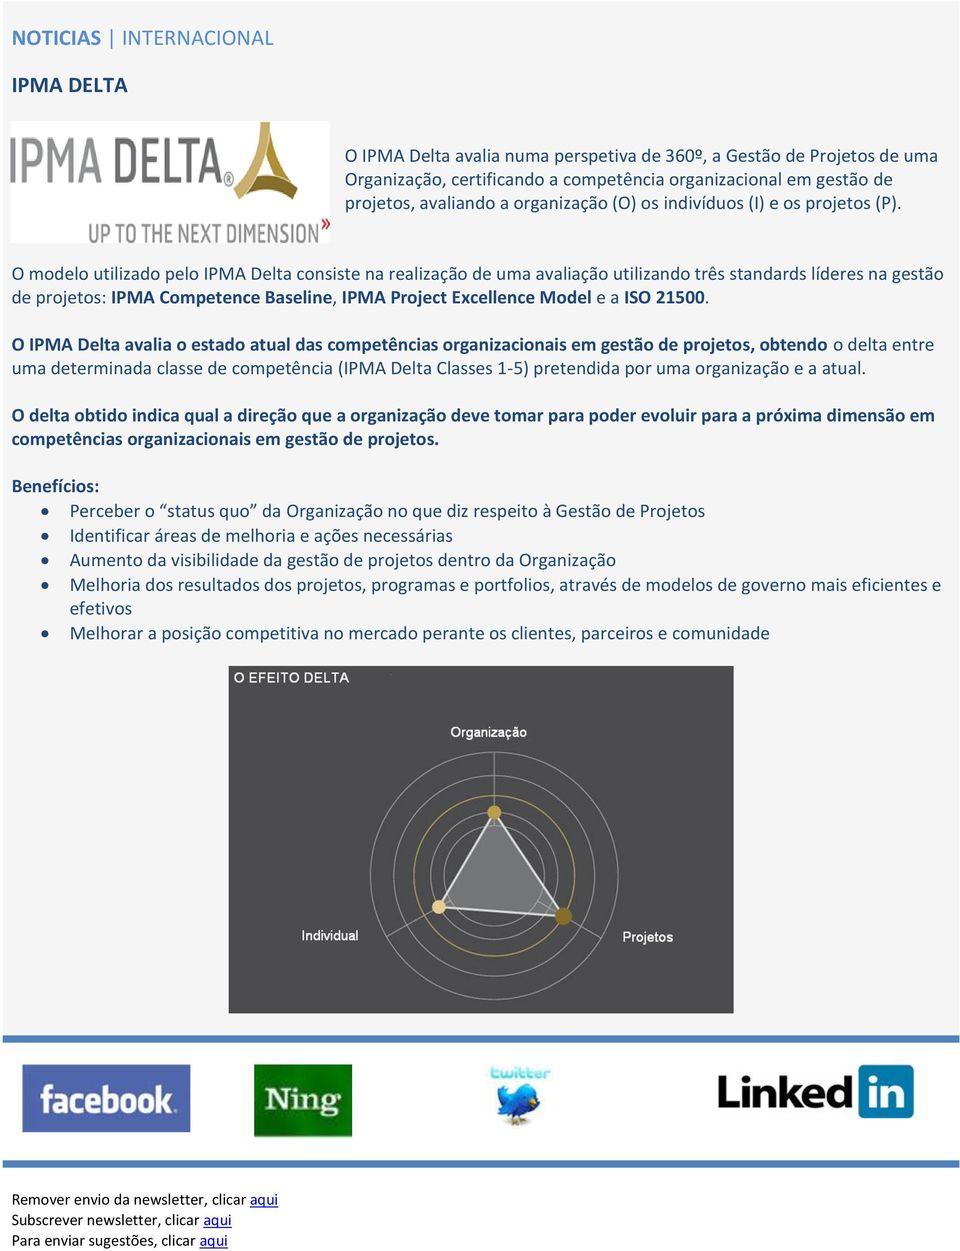 O modelo utilizado pelo IPMA Delta consiste na realização de uma avaliação utilizando três standards líderes na gestão de projetos: IPMA Competence Baseline, IPMA Project Excellence Model e a ISO